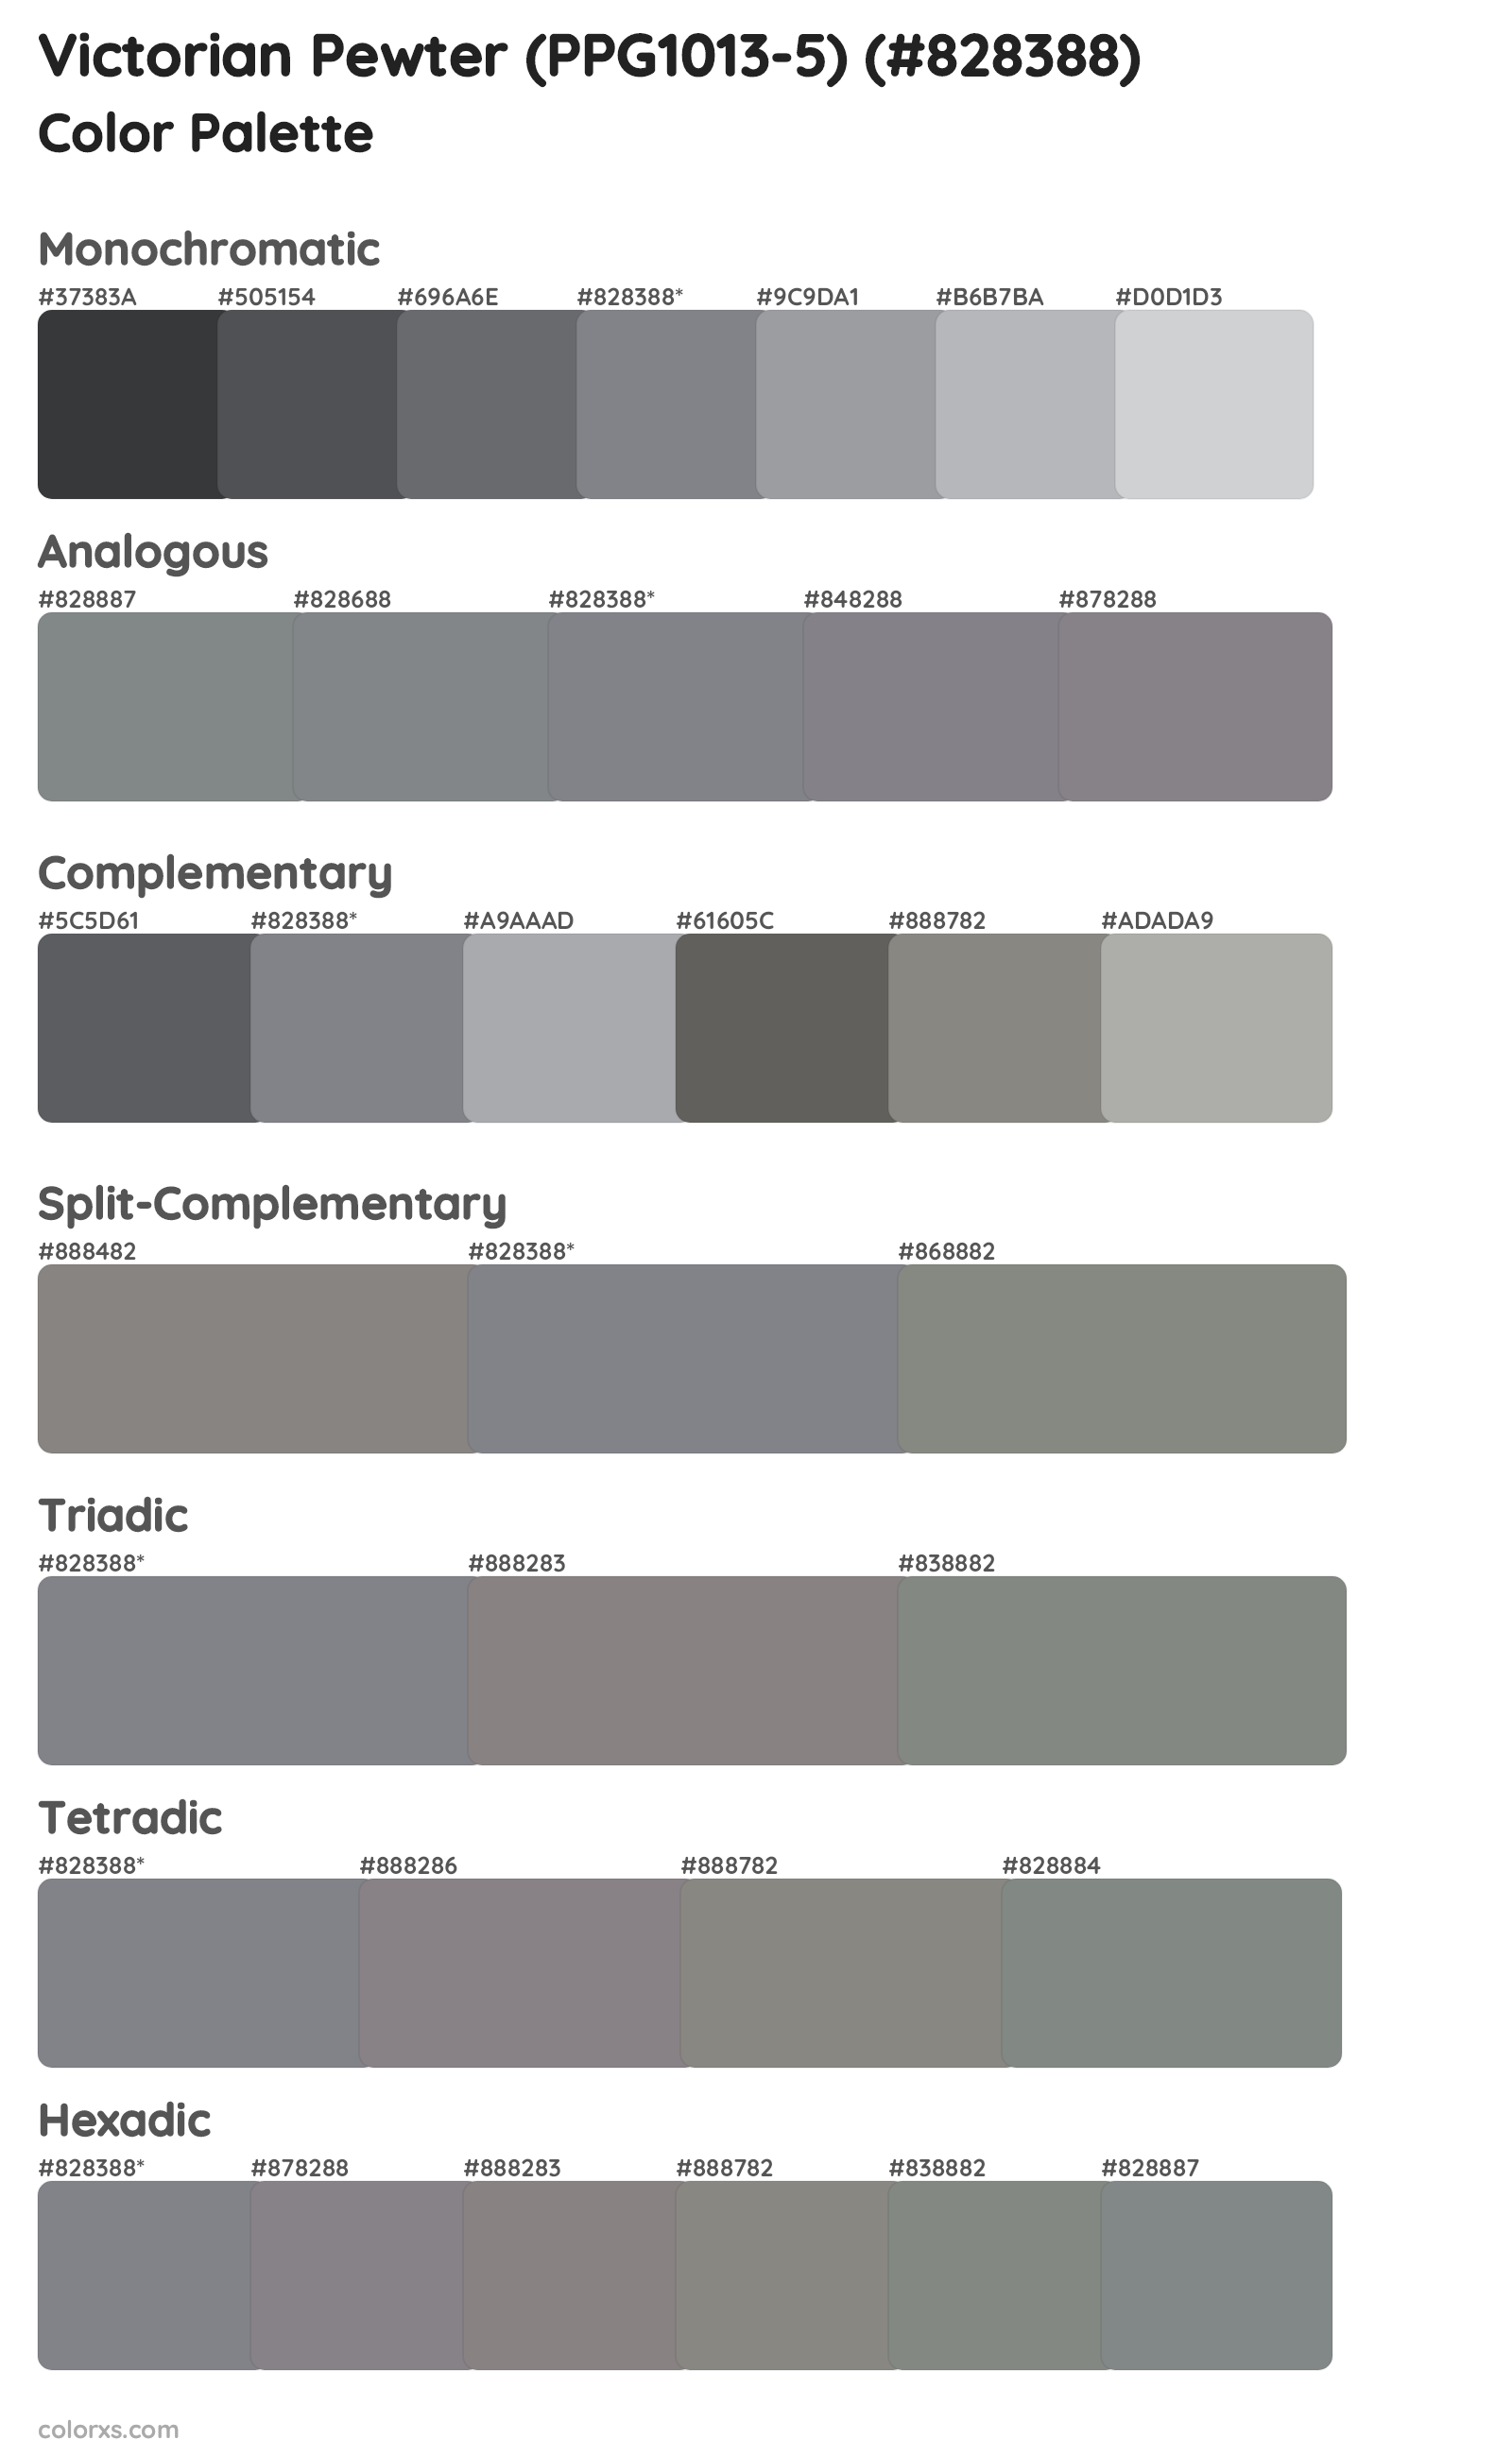 Victorian Pewter (PPG1013-5) Color Scheme Palettes